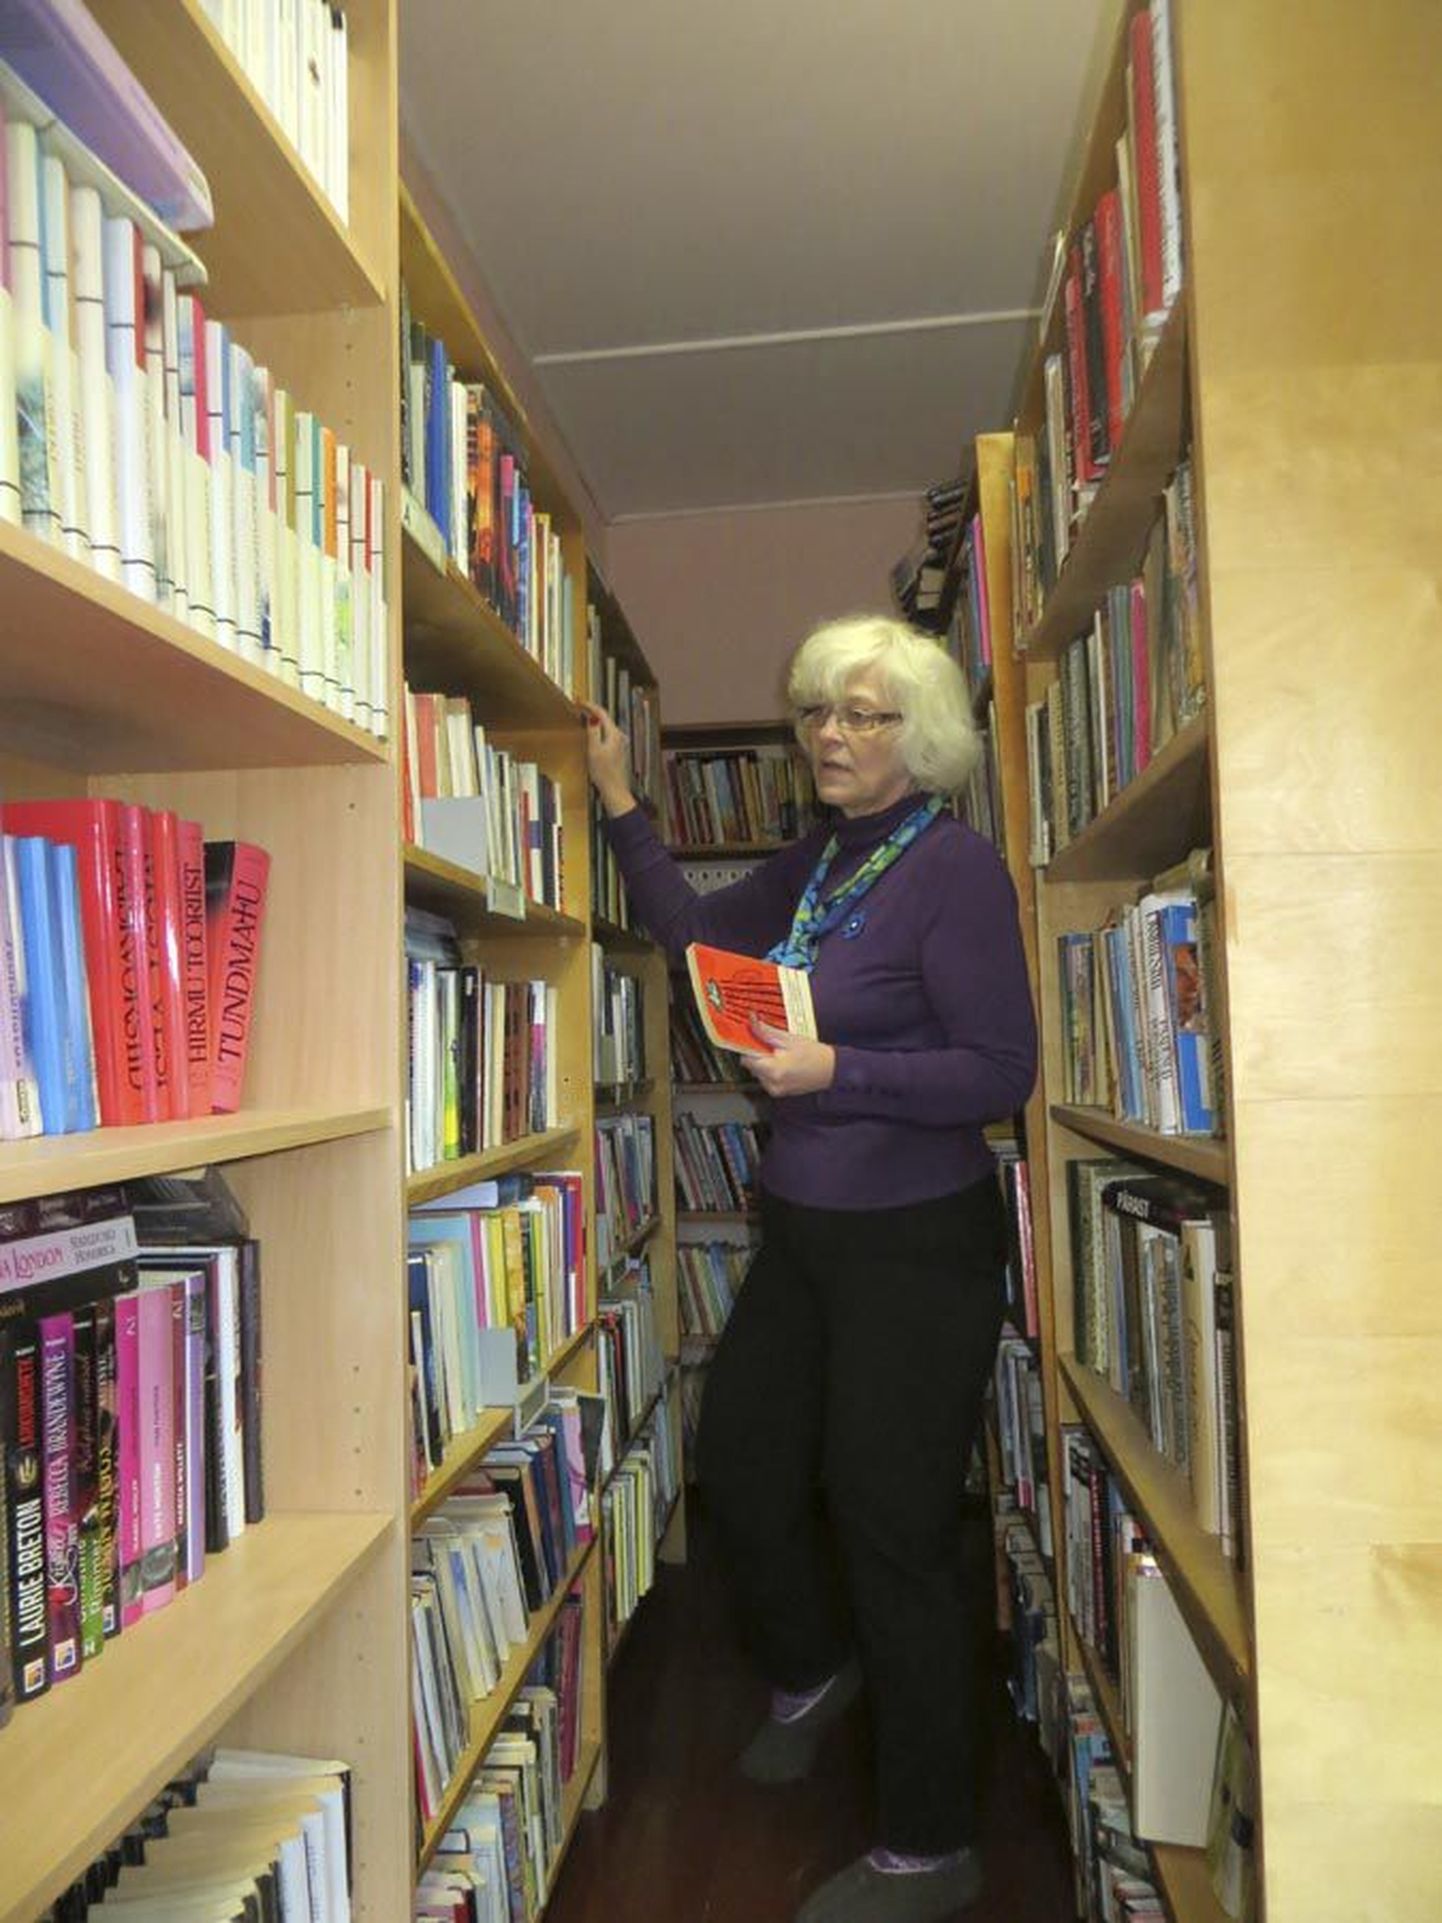 Kahes väikeses toas sisse seatud raamatukogus on ruumi napilt, aga raamatukoguhoidja Marika Hein teab täpselt, kus mingi raamat asub.